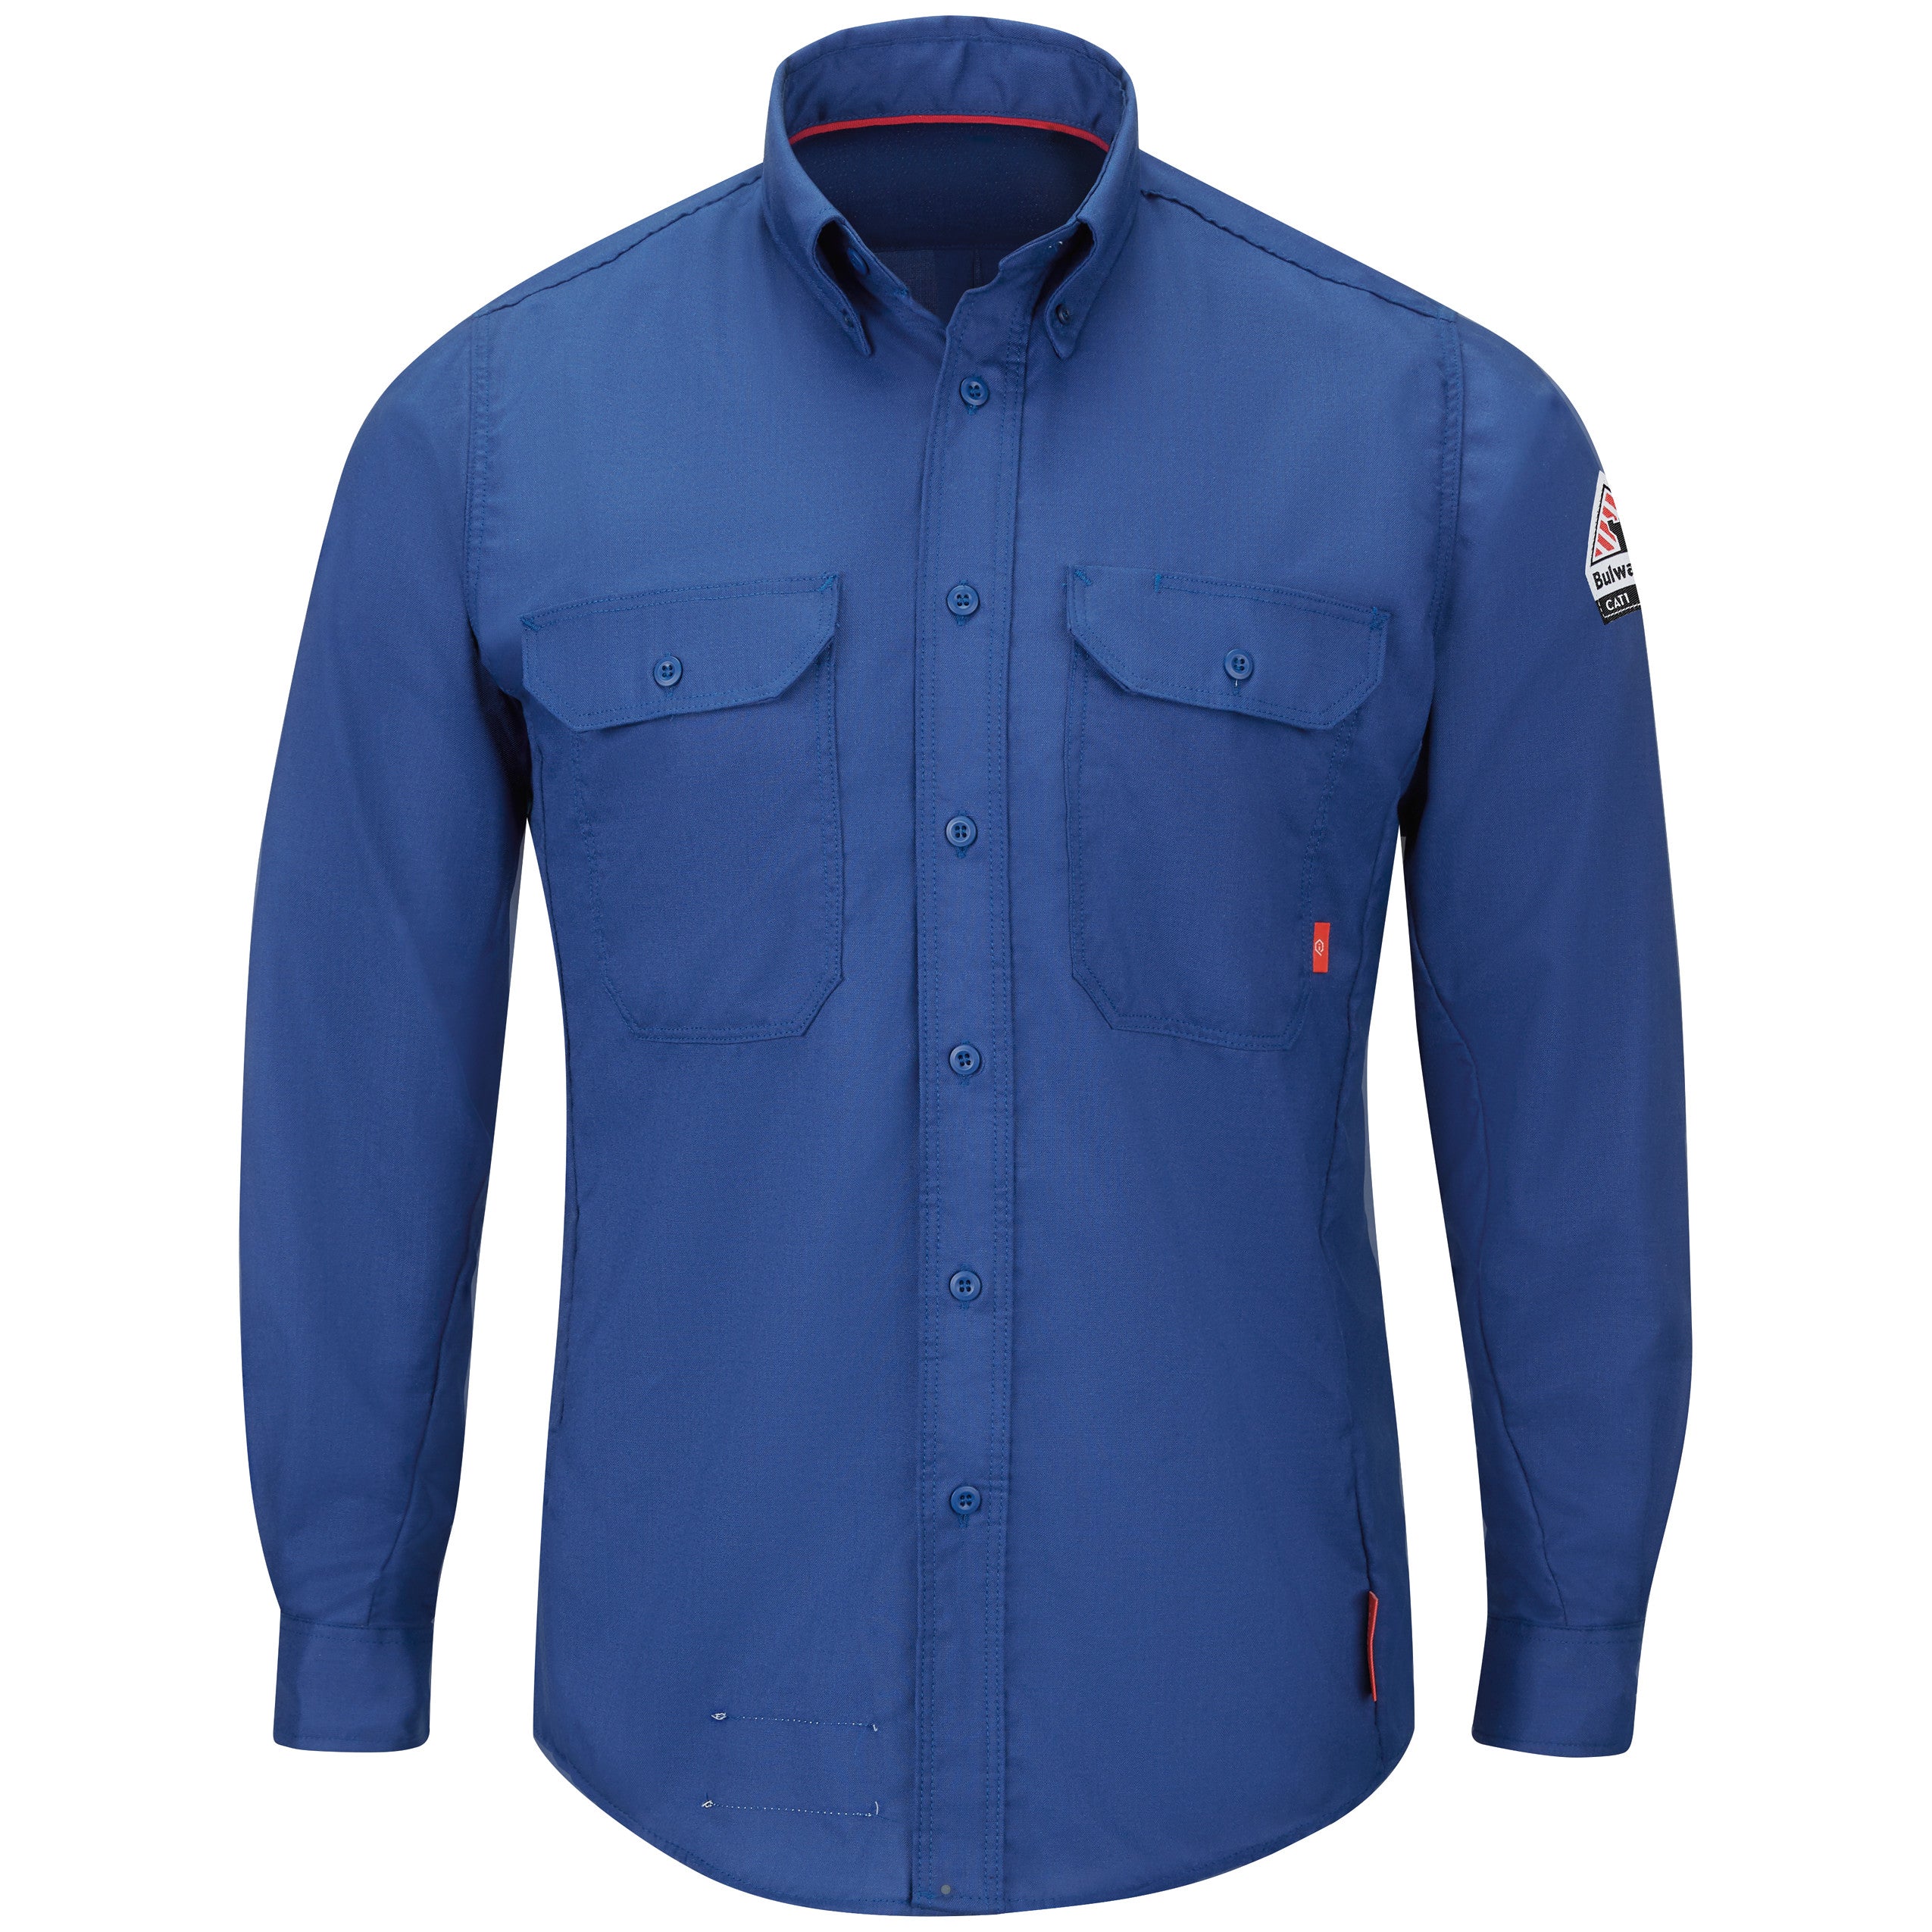 iQ Series® Men's Lightweight Comfort Woven Shirt QS24 - Royal Blue-eSafety Supplies, Inc